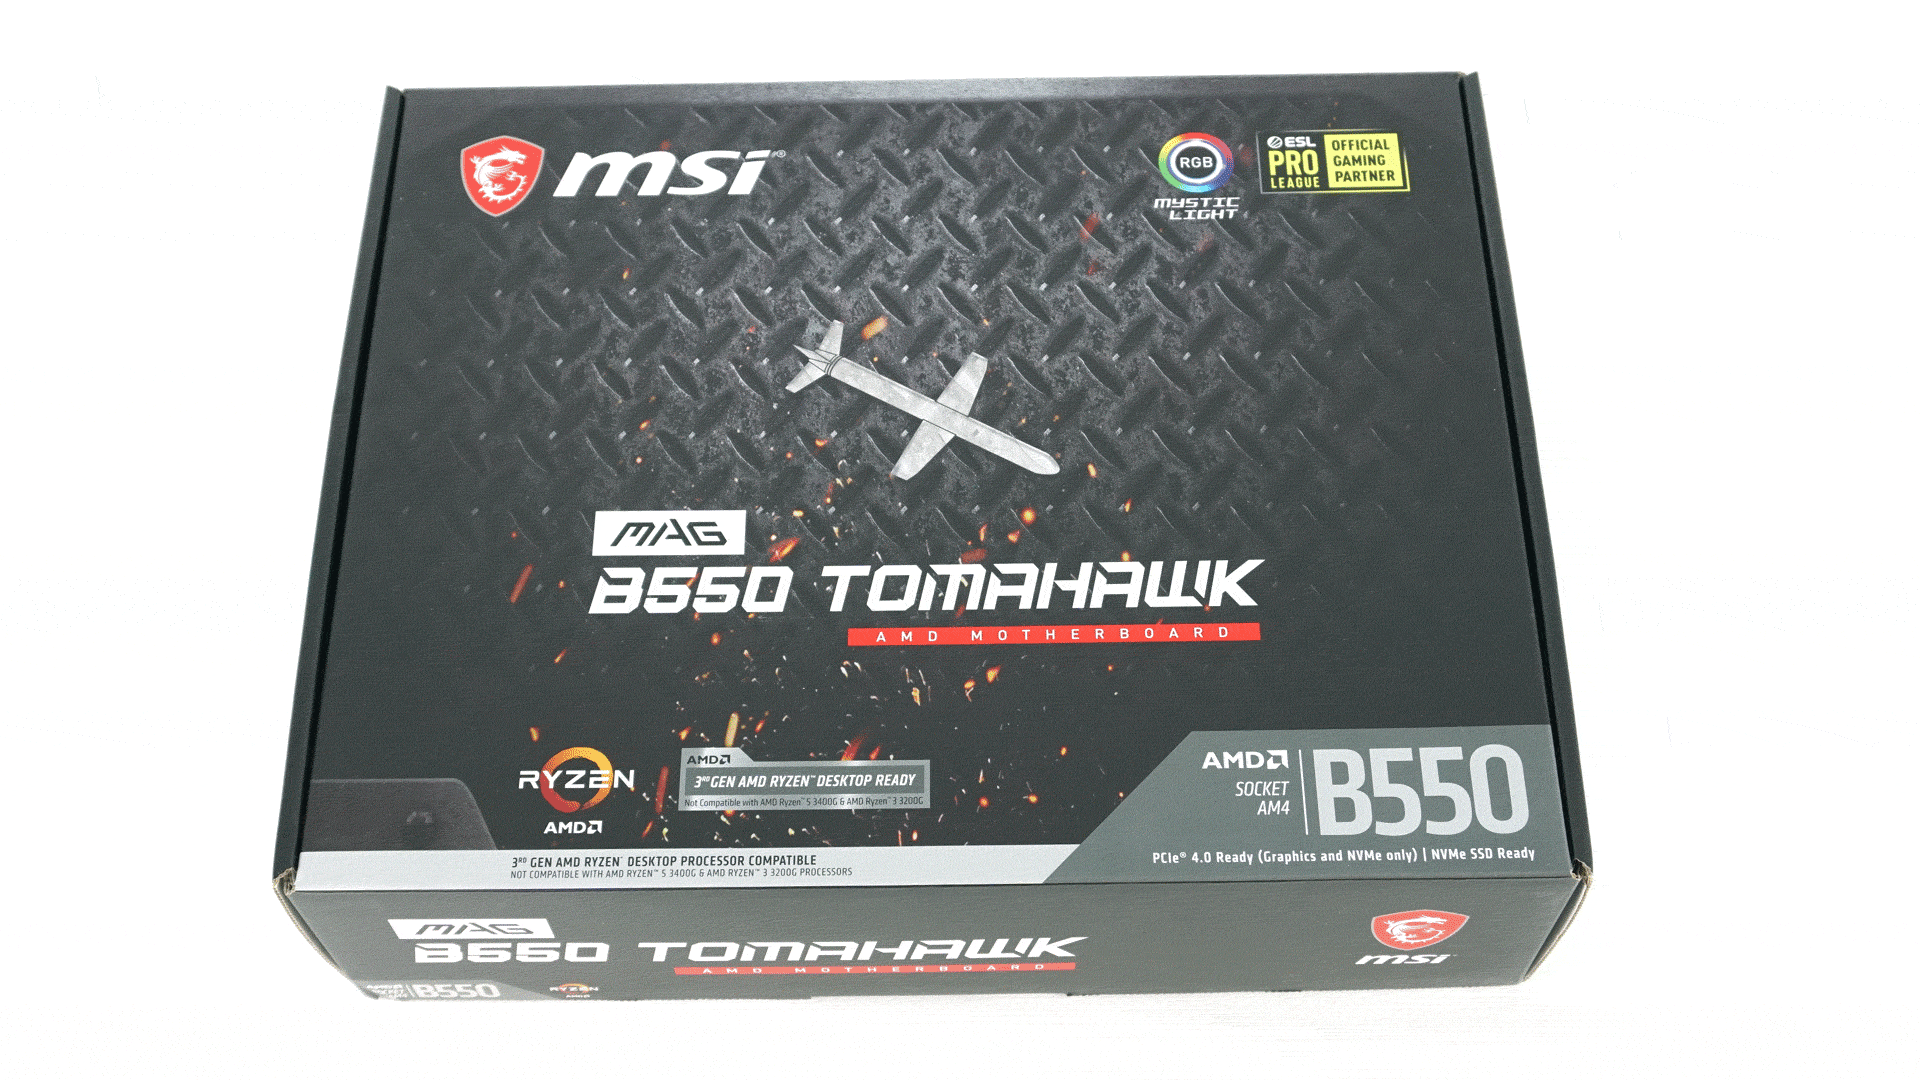 AMD B550 v podaní MSI (Tomahawk) a Asus (Strix) - Page 2 of 14